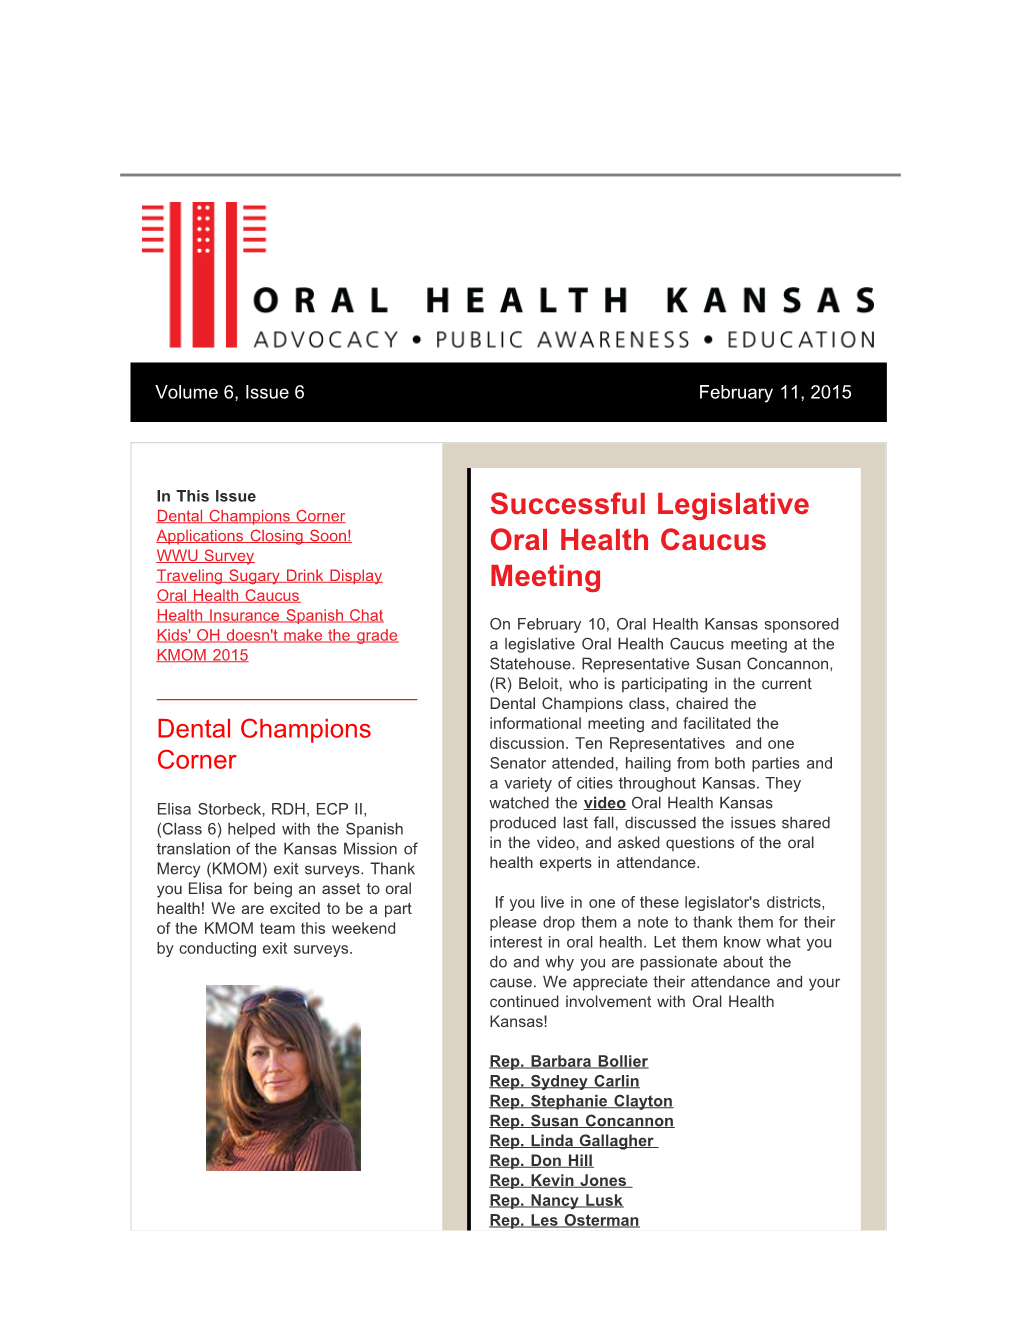 Successful Legislative Oral Health Caucus Meeting